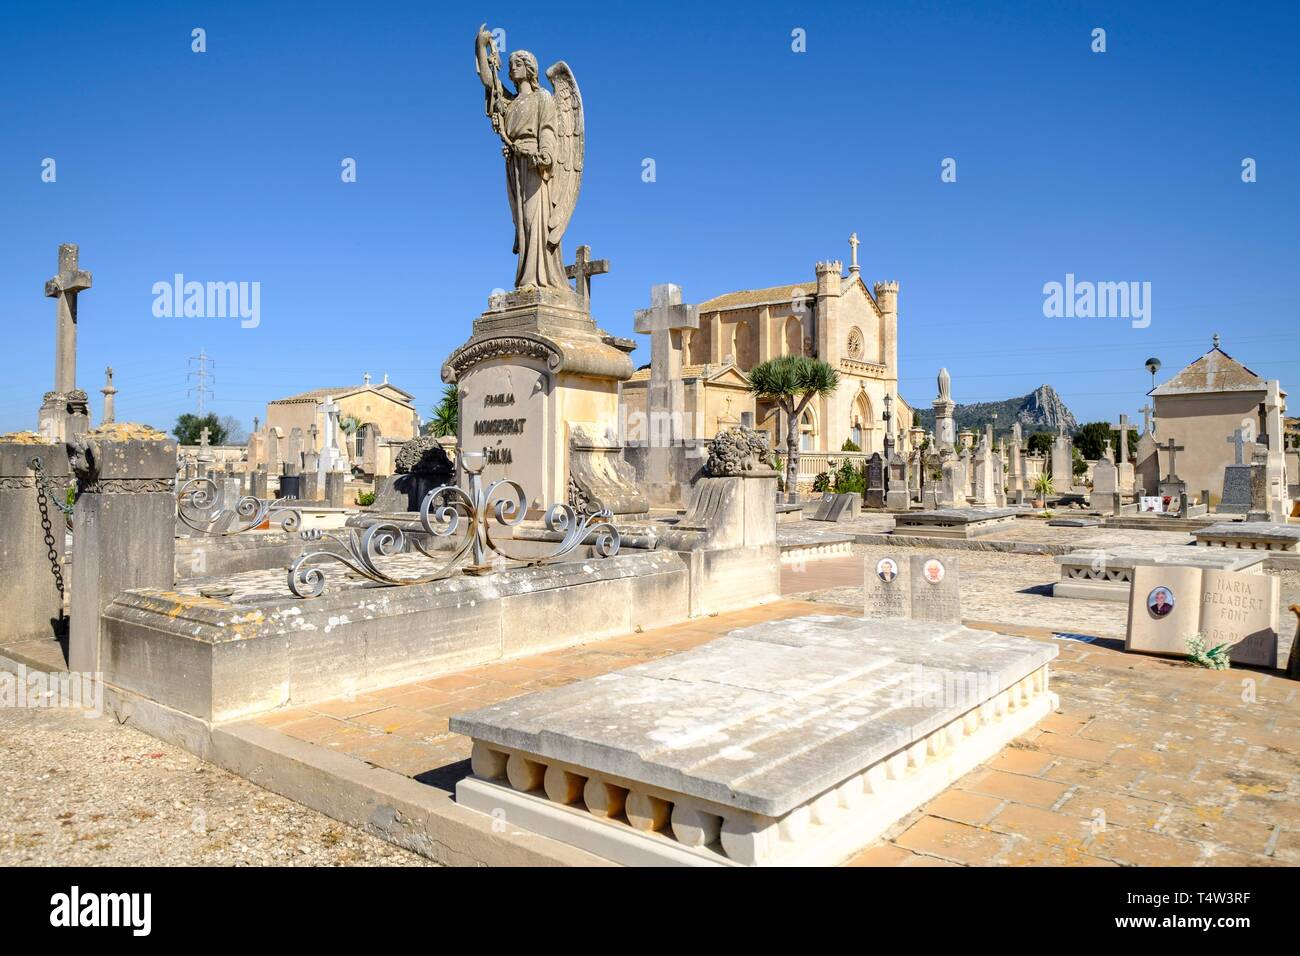 Cementerio, Llucmajor, Mallorca, Balearen, Spanien, Europa. Stockfoto